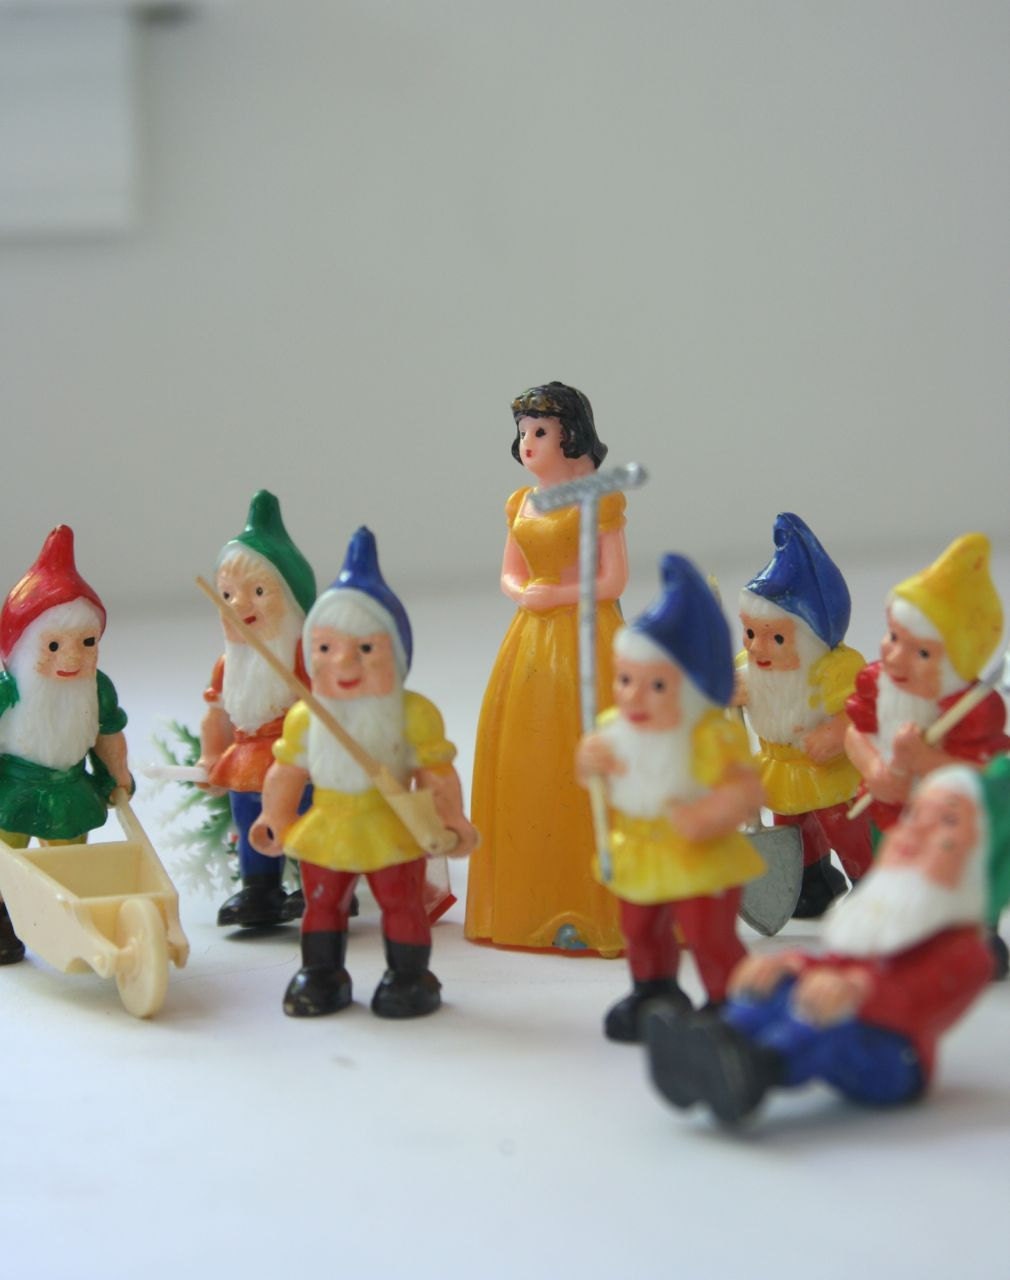 Vintage Snow White and the Seven Dwarves cake decor - fuzzymama